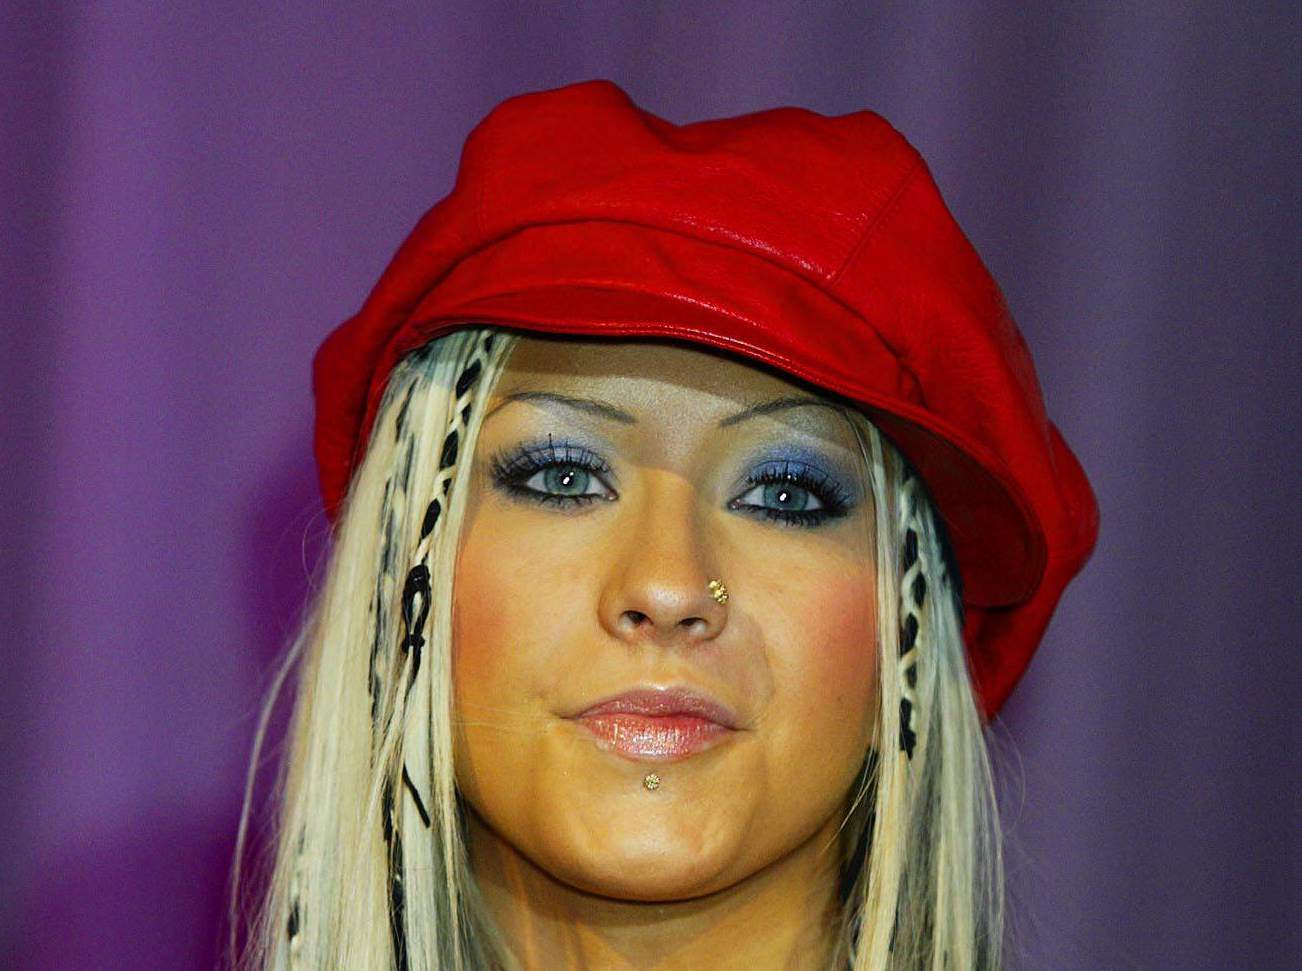 Christina Aguilera debuts new single 'Dirrty' at photocall at Sway